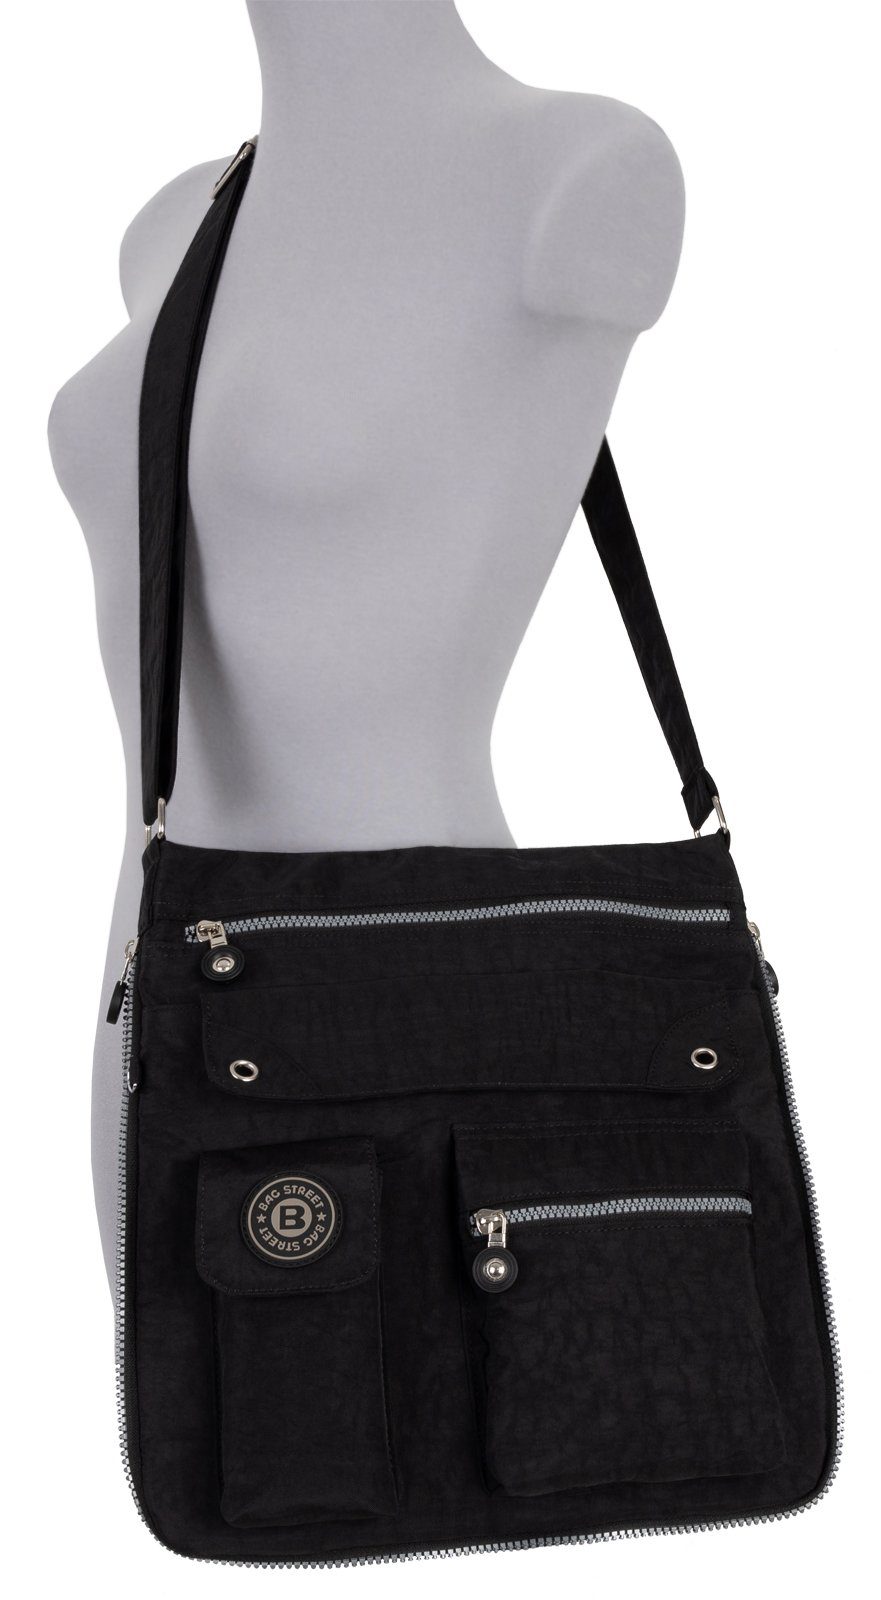 BAG STREET Schlüsseltasche Damentasche Schultertasche Umhängetasche Umhängetasche Handtasche tragbar Schultertasche, als Schwarz